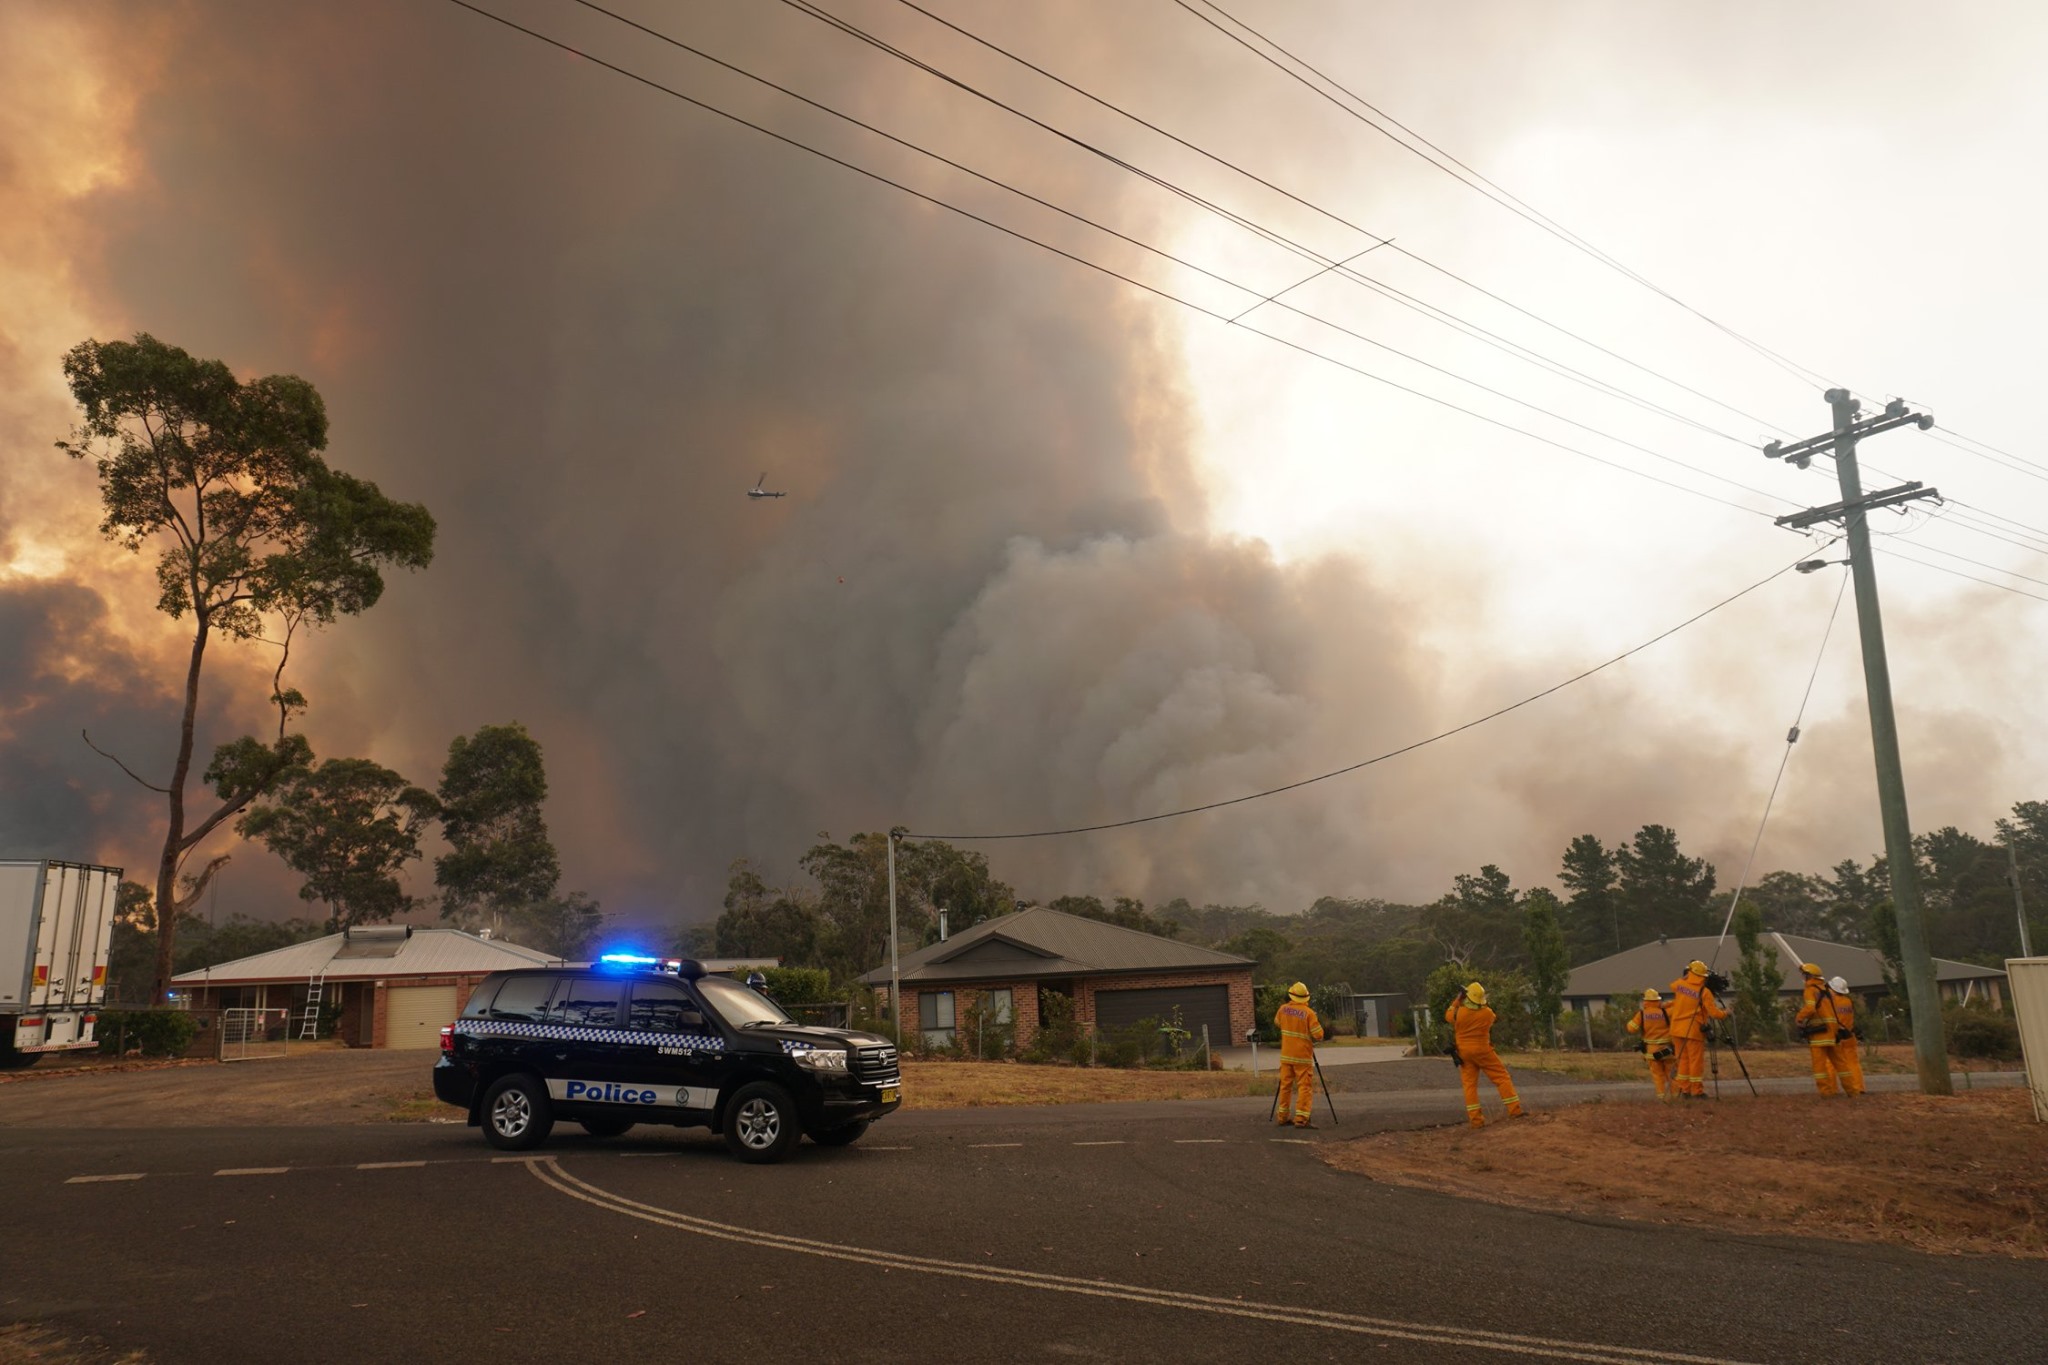 La policía evacua a los residentes de Yanderra, un pequeño pueblo situado en la frontera de las tierras altas del sur y la región de Macarthur de Nueva Gales del Sur, durante la ola de incendios forestales que asolan Australia. Foto tomada 21 de diciembre de 2019. Autor: Helitak430.